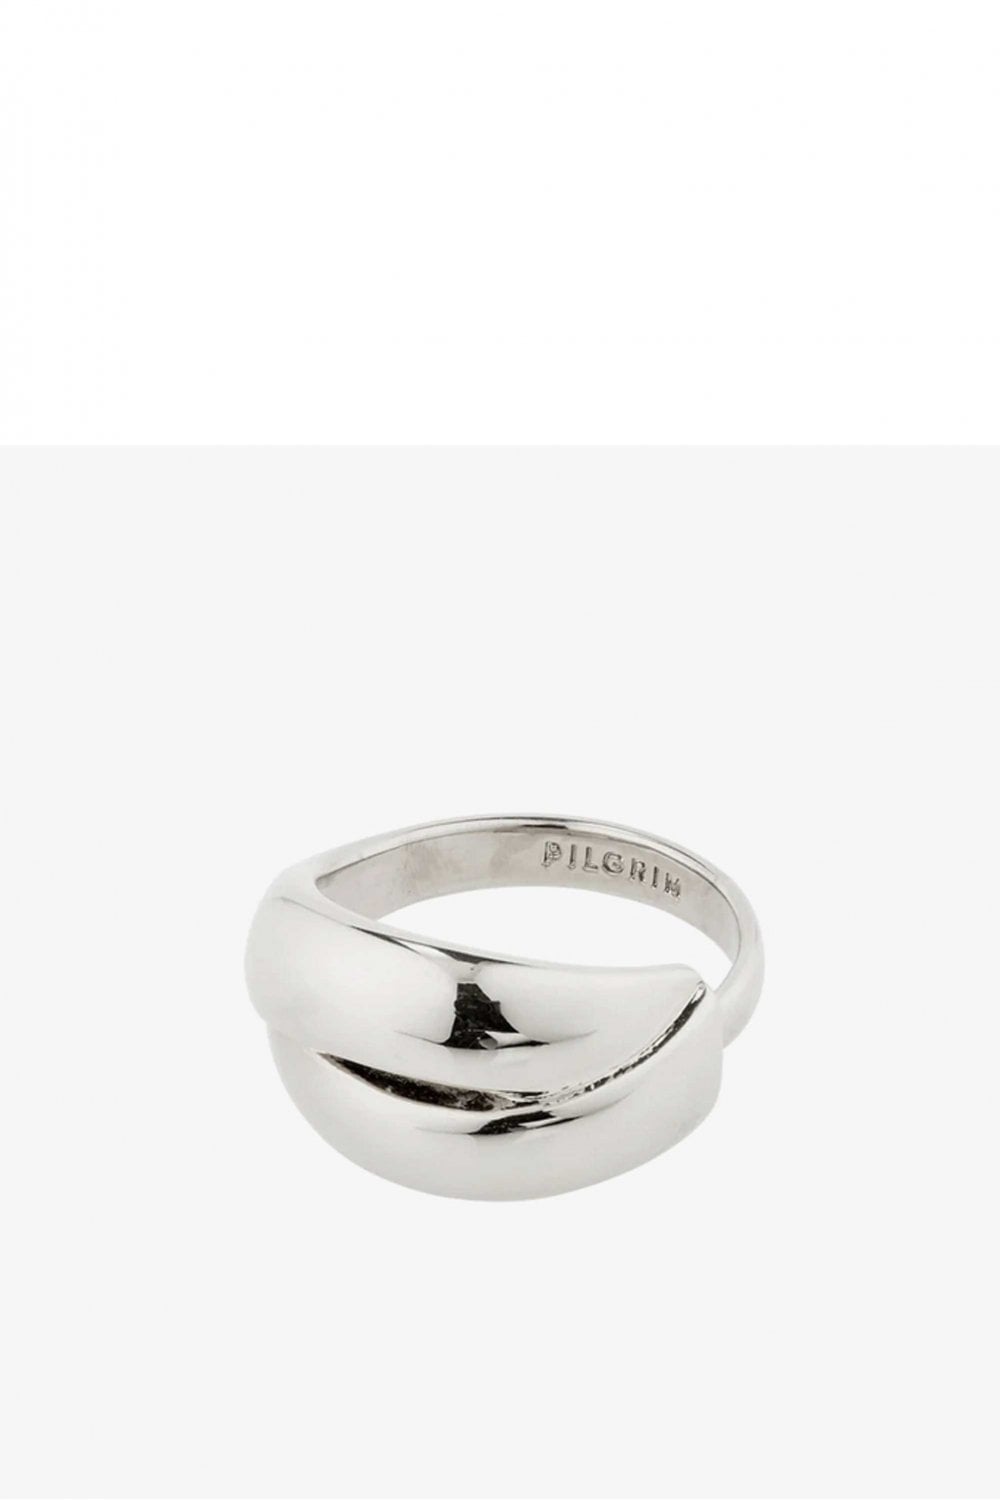 Pilgrim Orit Silver Ring